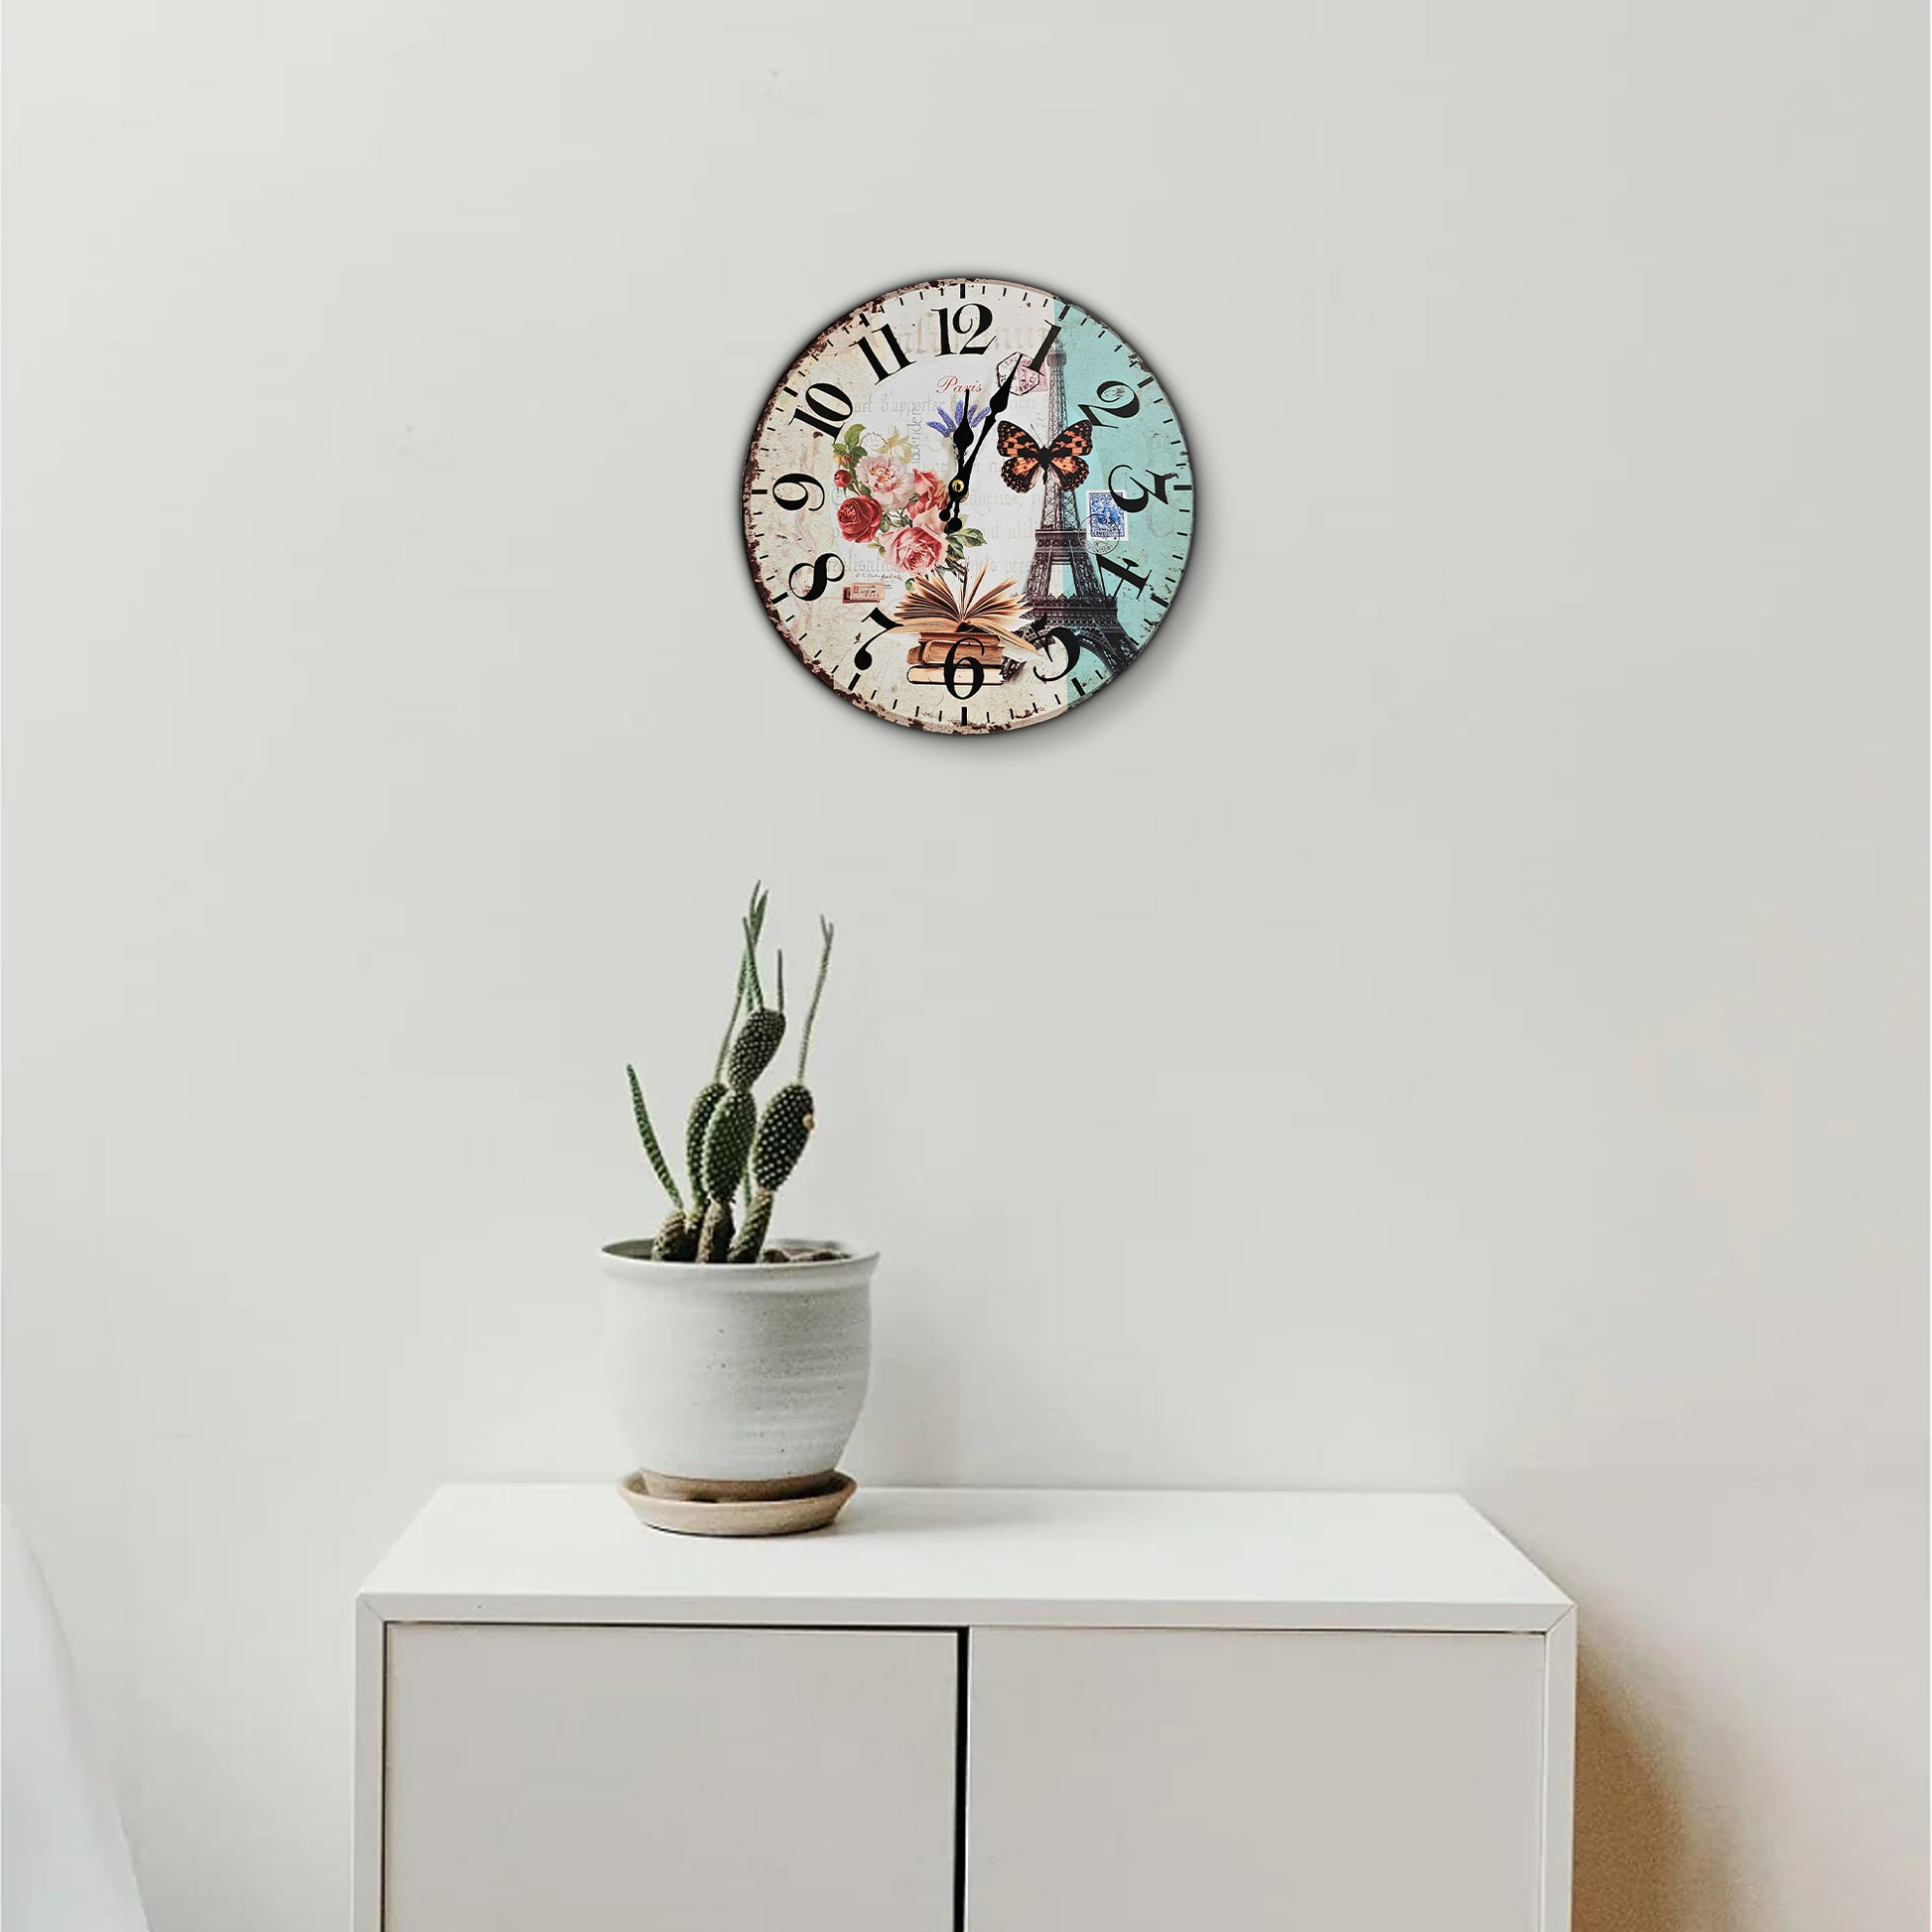  Retro Wooden Decorative Wall Art Clock 